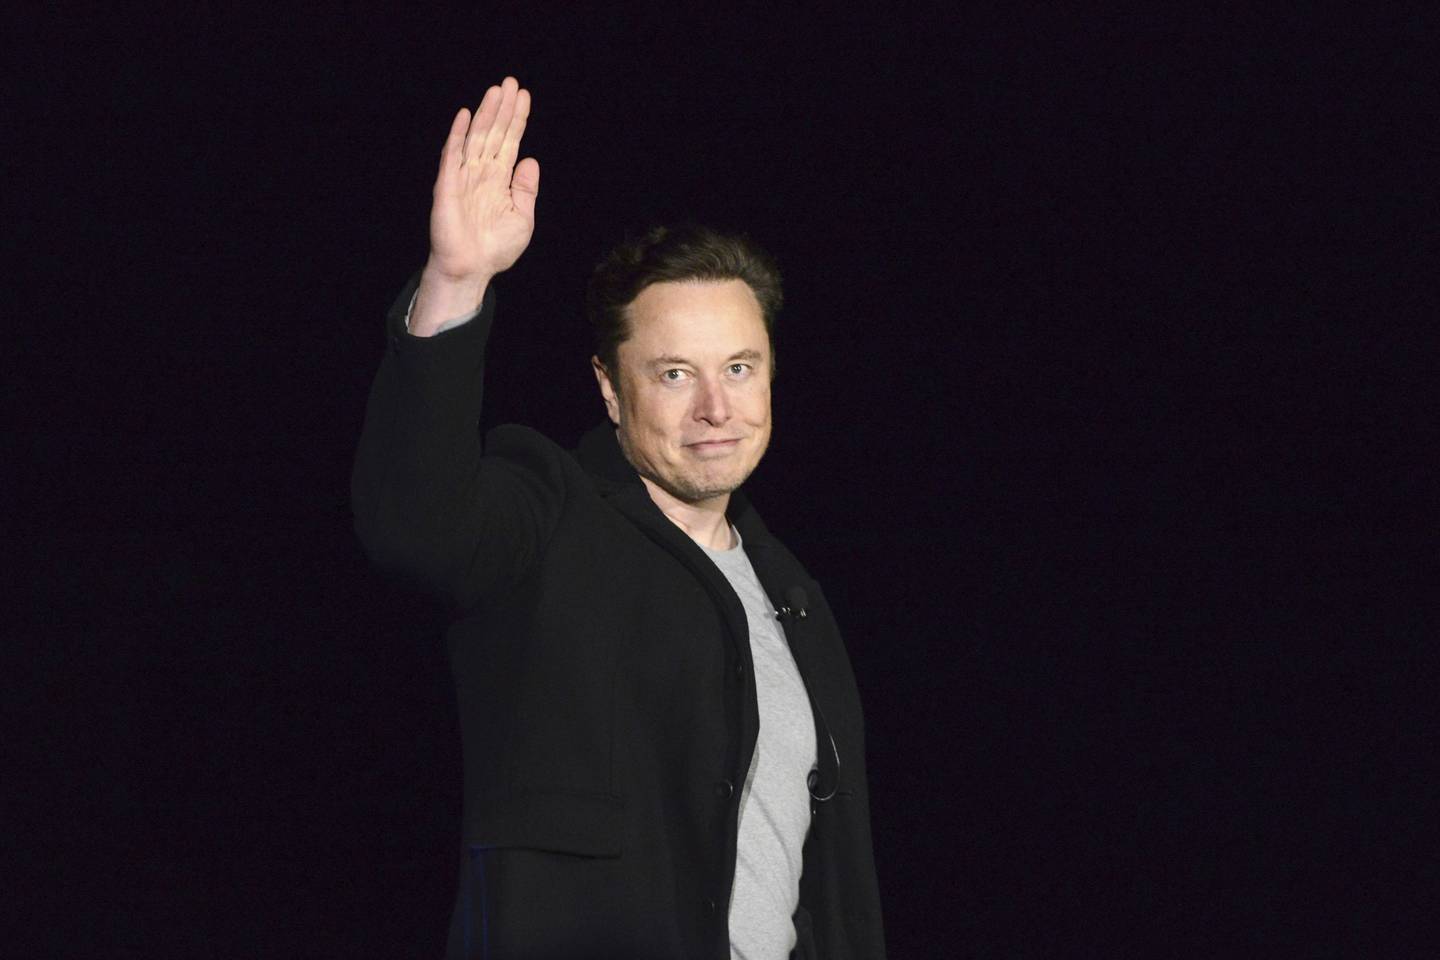 Elon Musk says he cut spending "like crazy" on Twitter to avoid $3 billion deficit